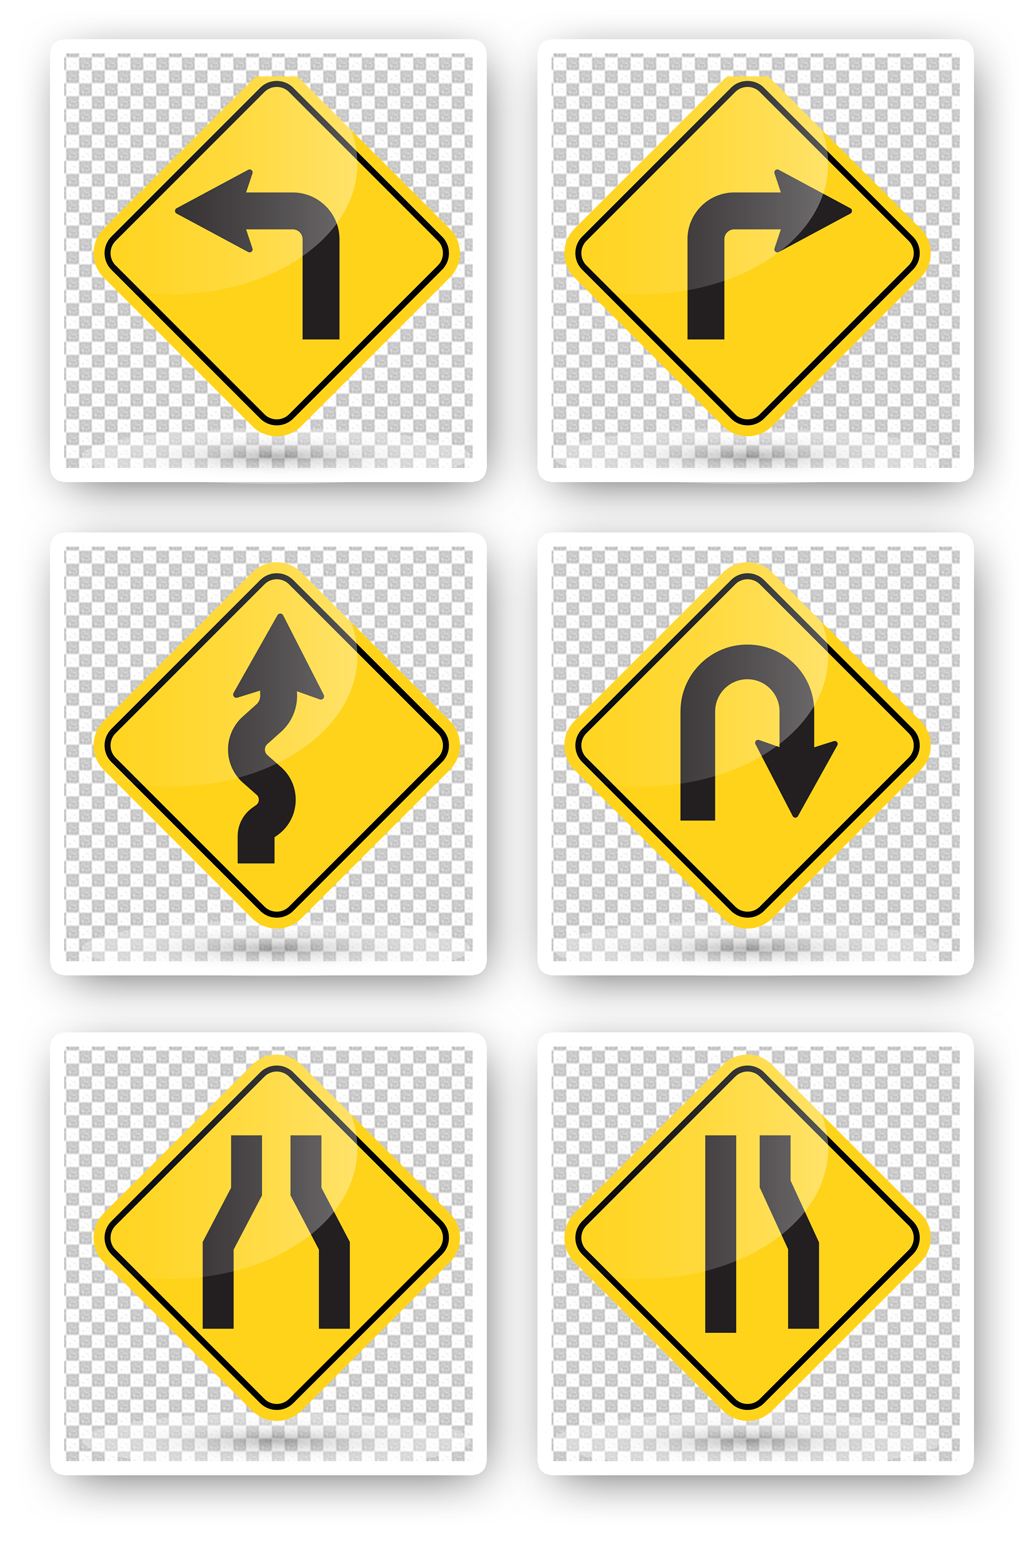 交通公路路标指示牌素材